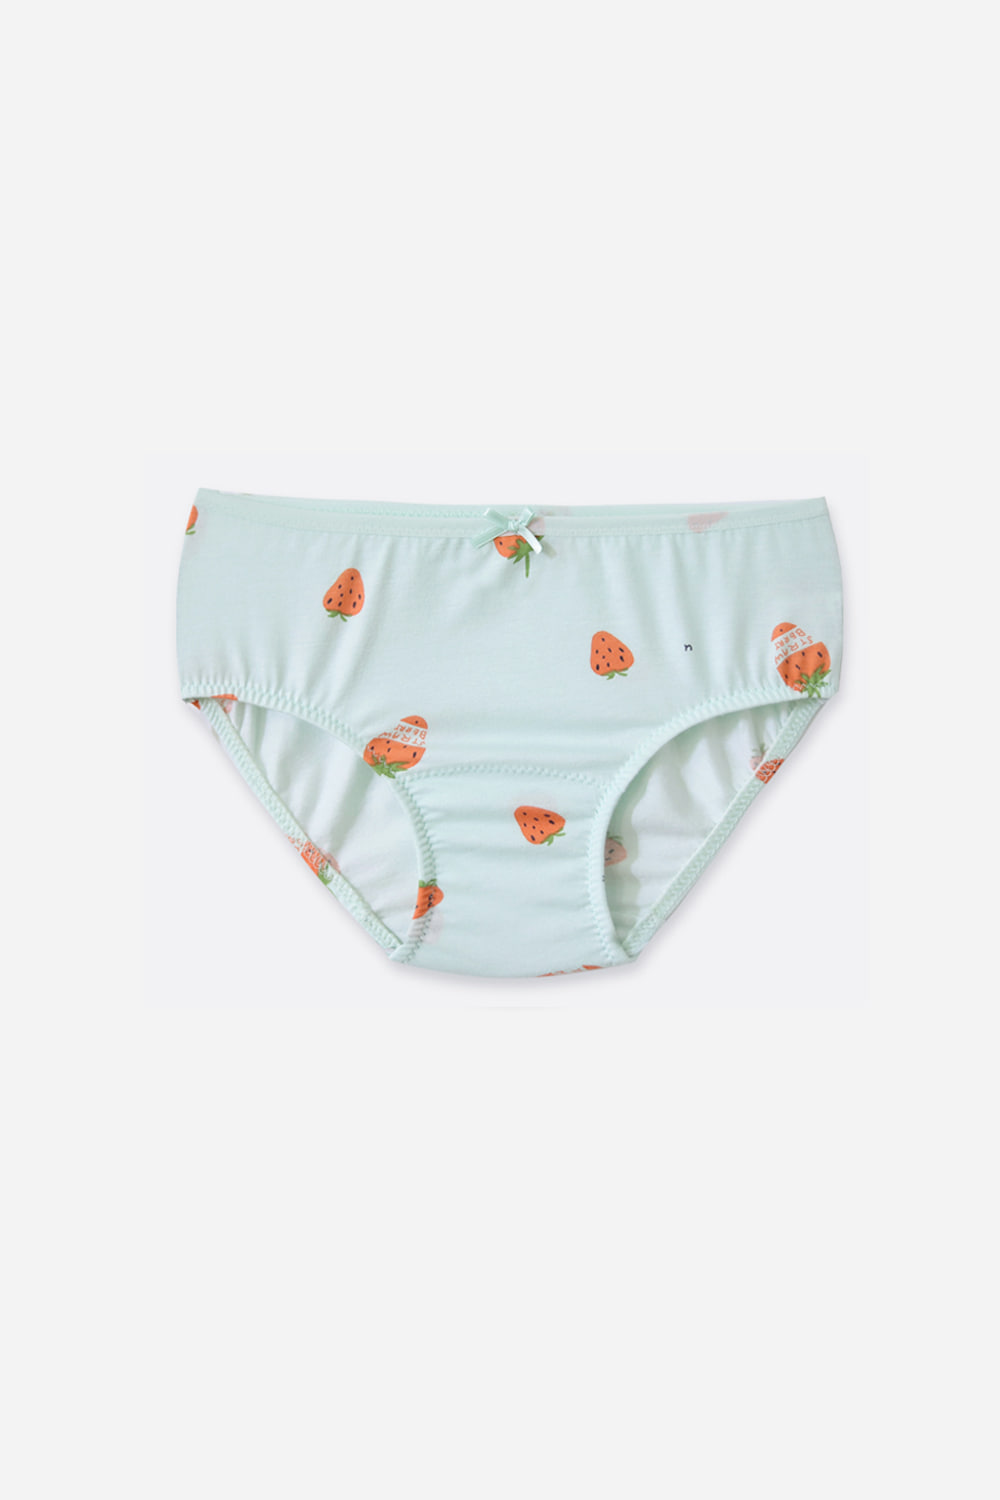 오렌지베리 접밴드 삼각팬티잠옷, 홈웨어, 아동내복, 아동속옷,성인잠옷,고후나비